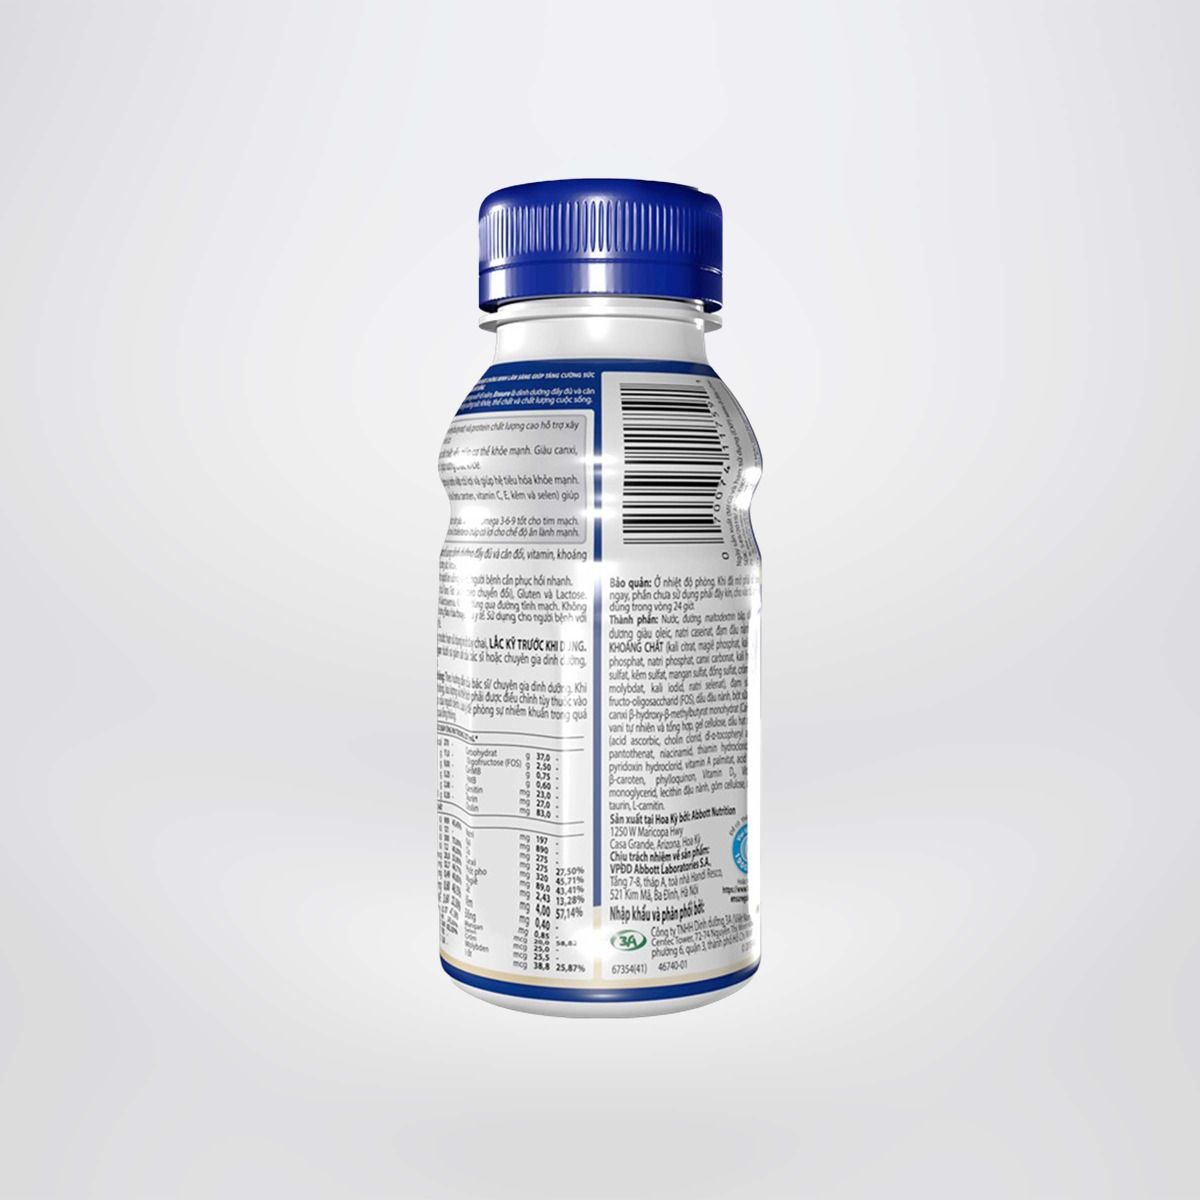 Thùng 24 chai sữa nước Ensure Vani 237ml giúp hệ tiêu hóa khỏe mạnh